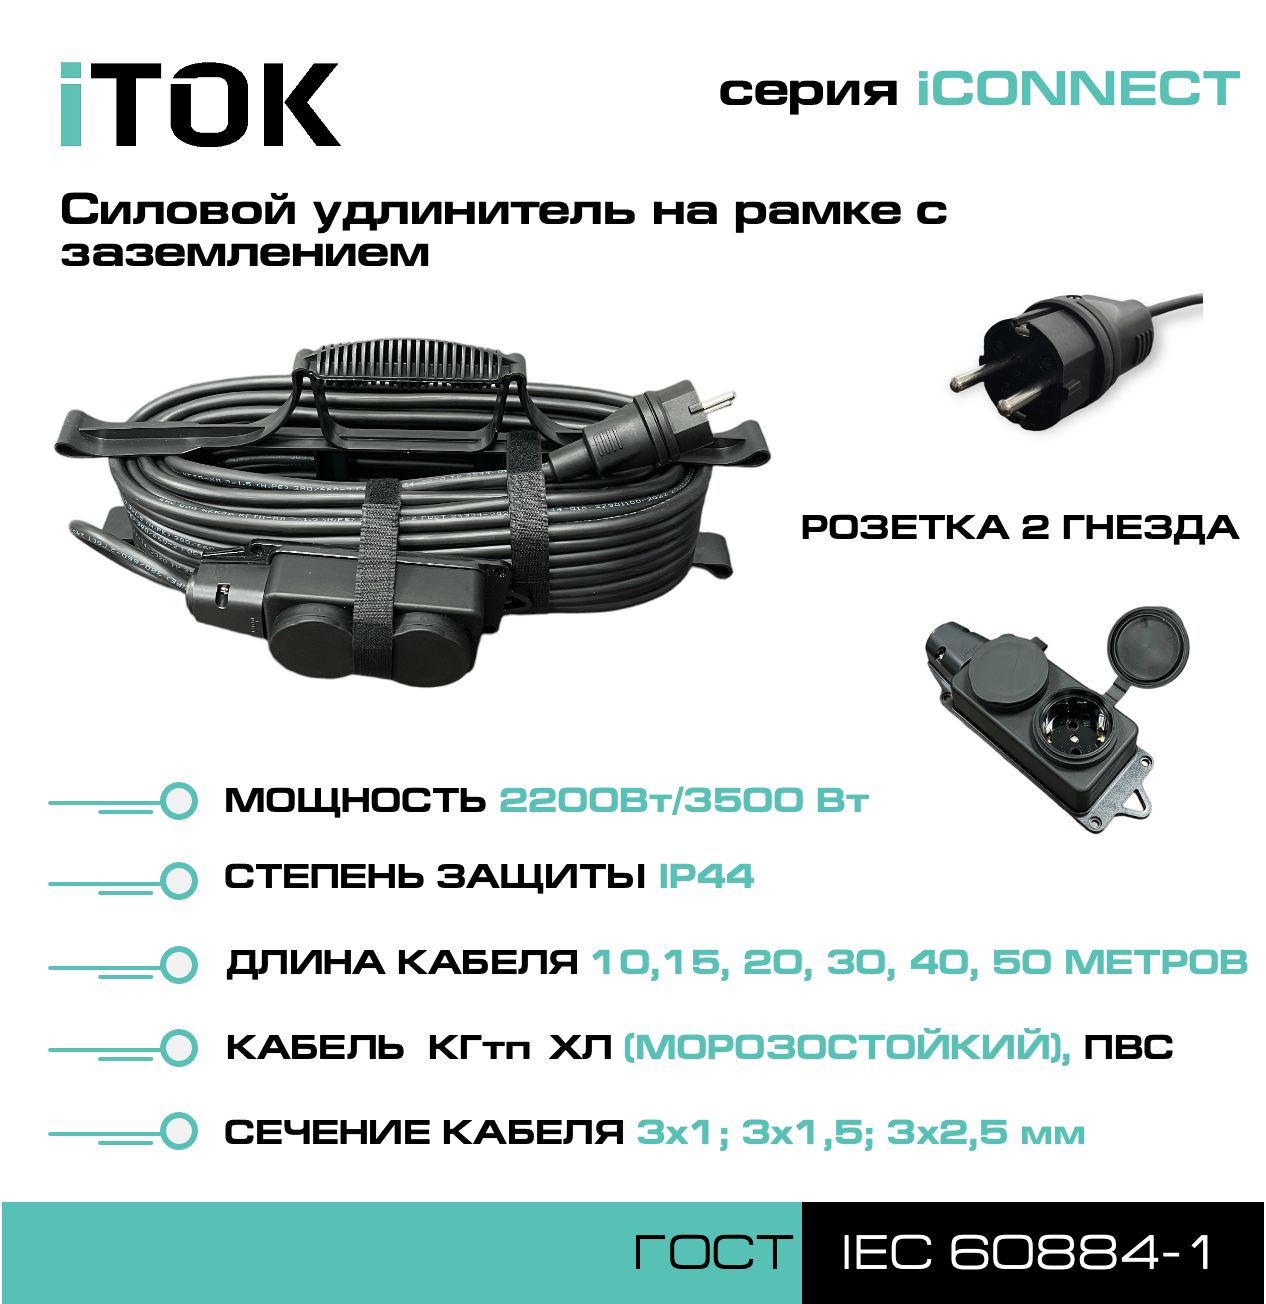 Удлинитель на рамке с заземлением серии iTOK iCONNECT ПВС 3х1,5 мм 2 гнезда IP44 15 м